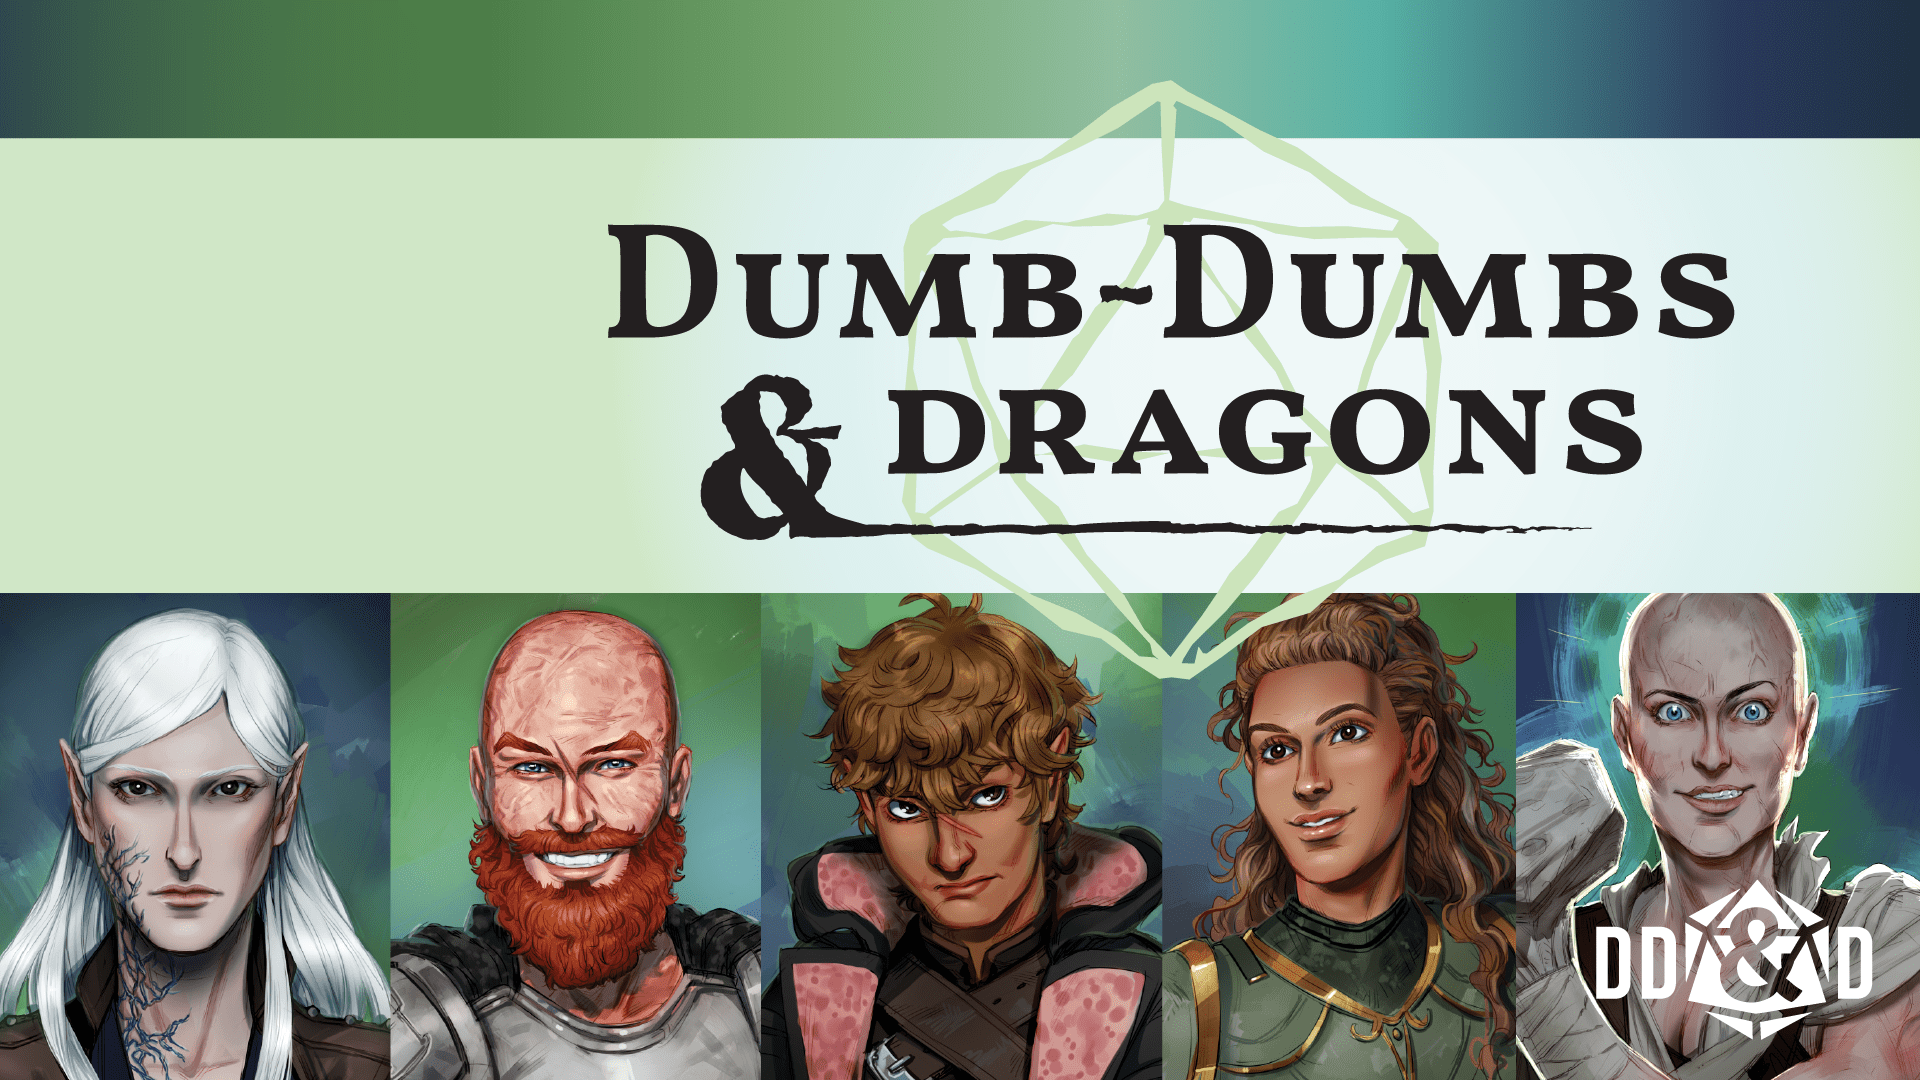 Dumb-Dumbs & Dragons